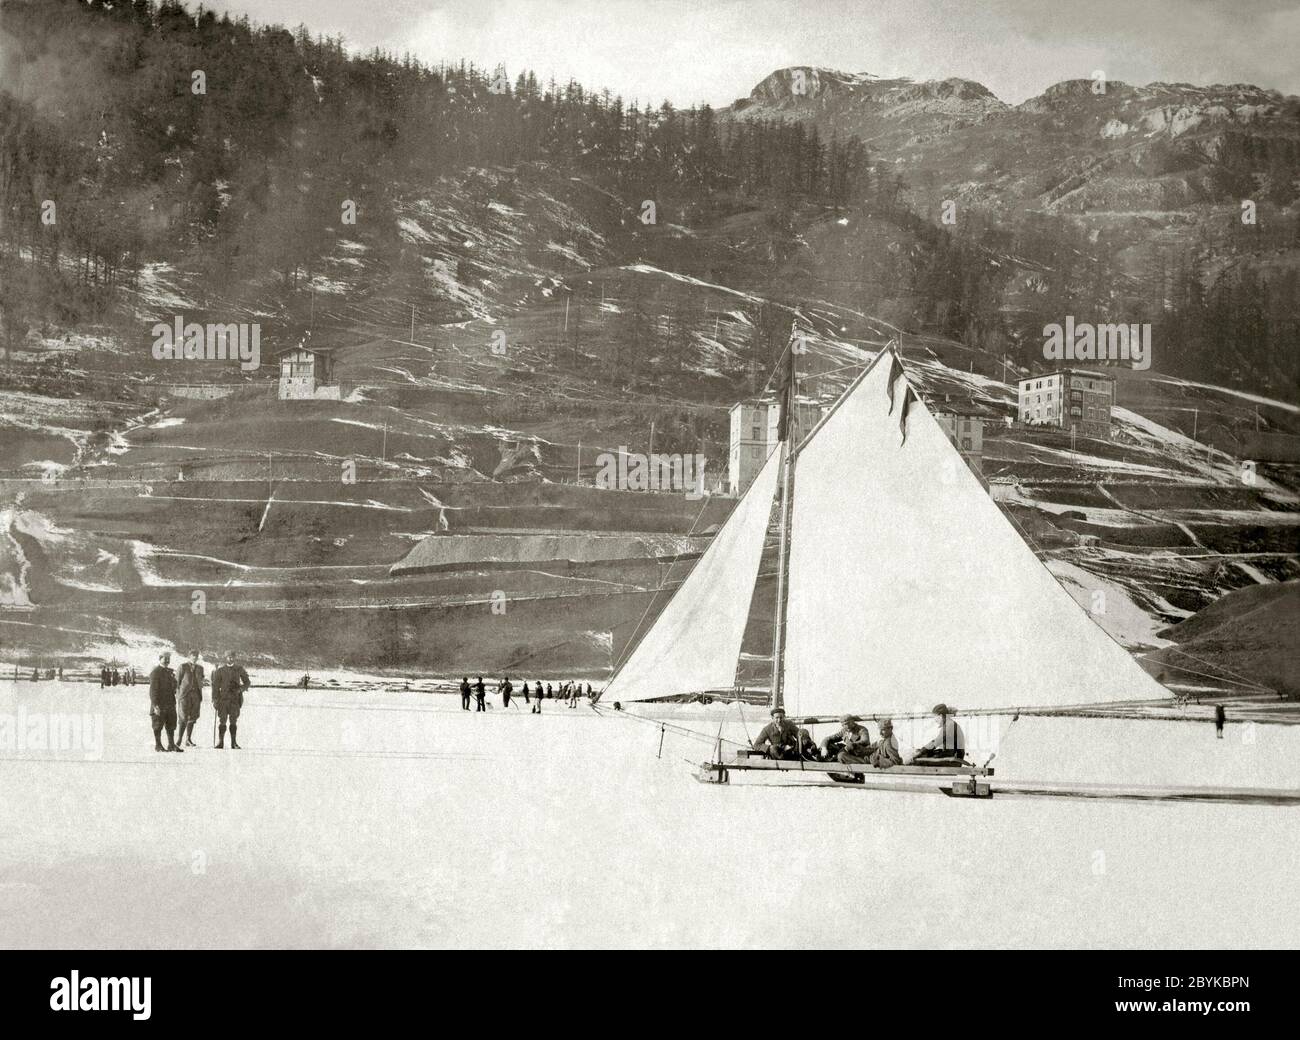 Yachting de glace sur un lac gelé, St Moritz, Suisse c. 1900. Banque D'Images